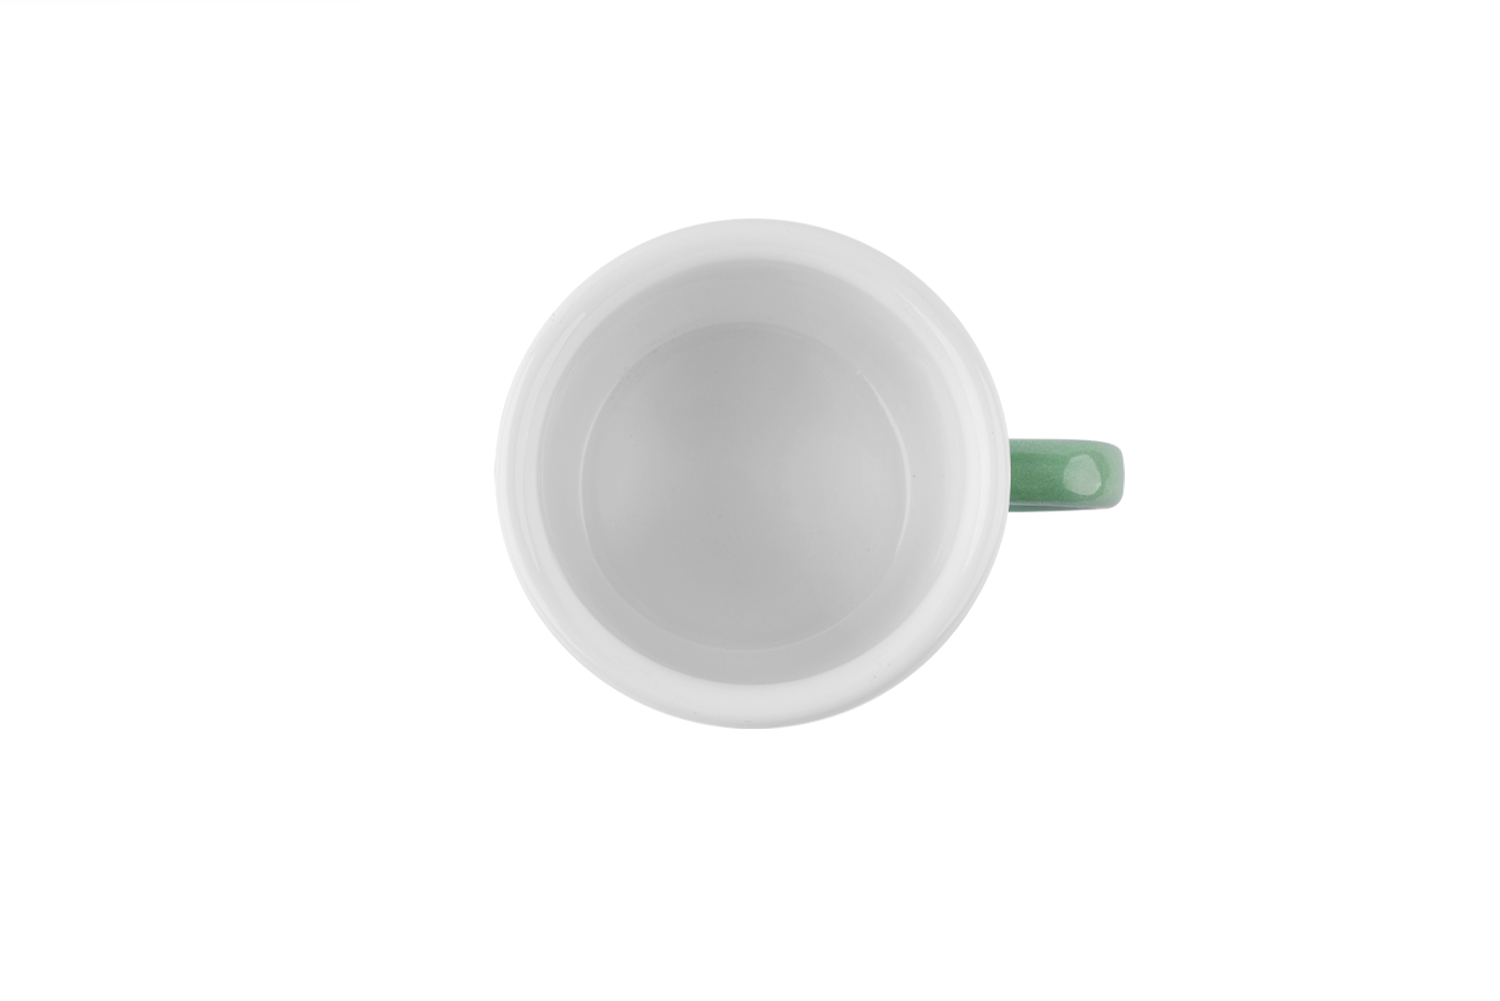 Blick ins weiße Innere der pastellgrünen Emaille-Tasse